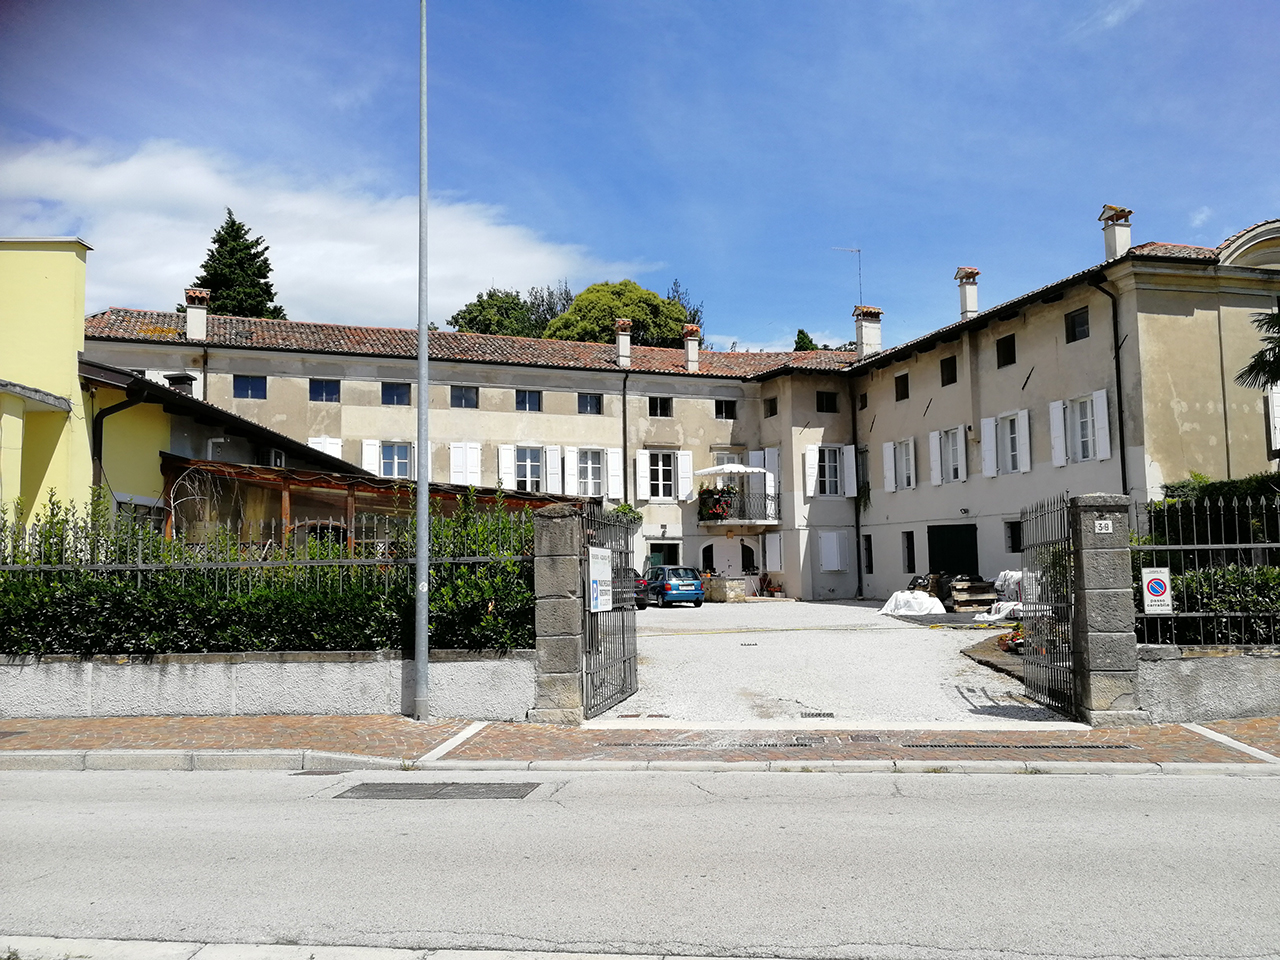 Complesso Villa Bresciani, Attems, Auersperg con cappella, giardino ed adiacenze (villa, privata) - Cervignano del Friuli (UD) 